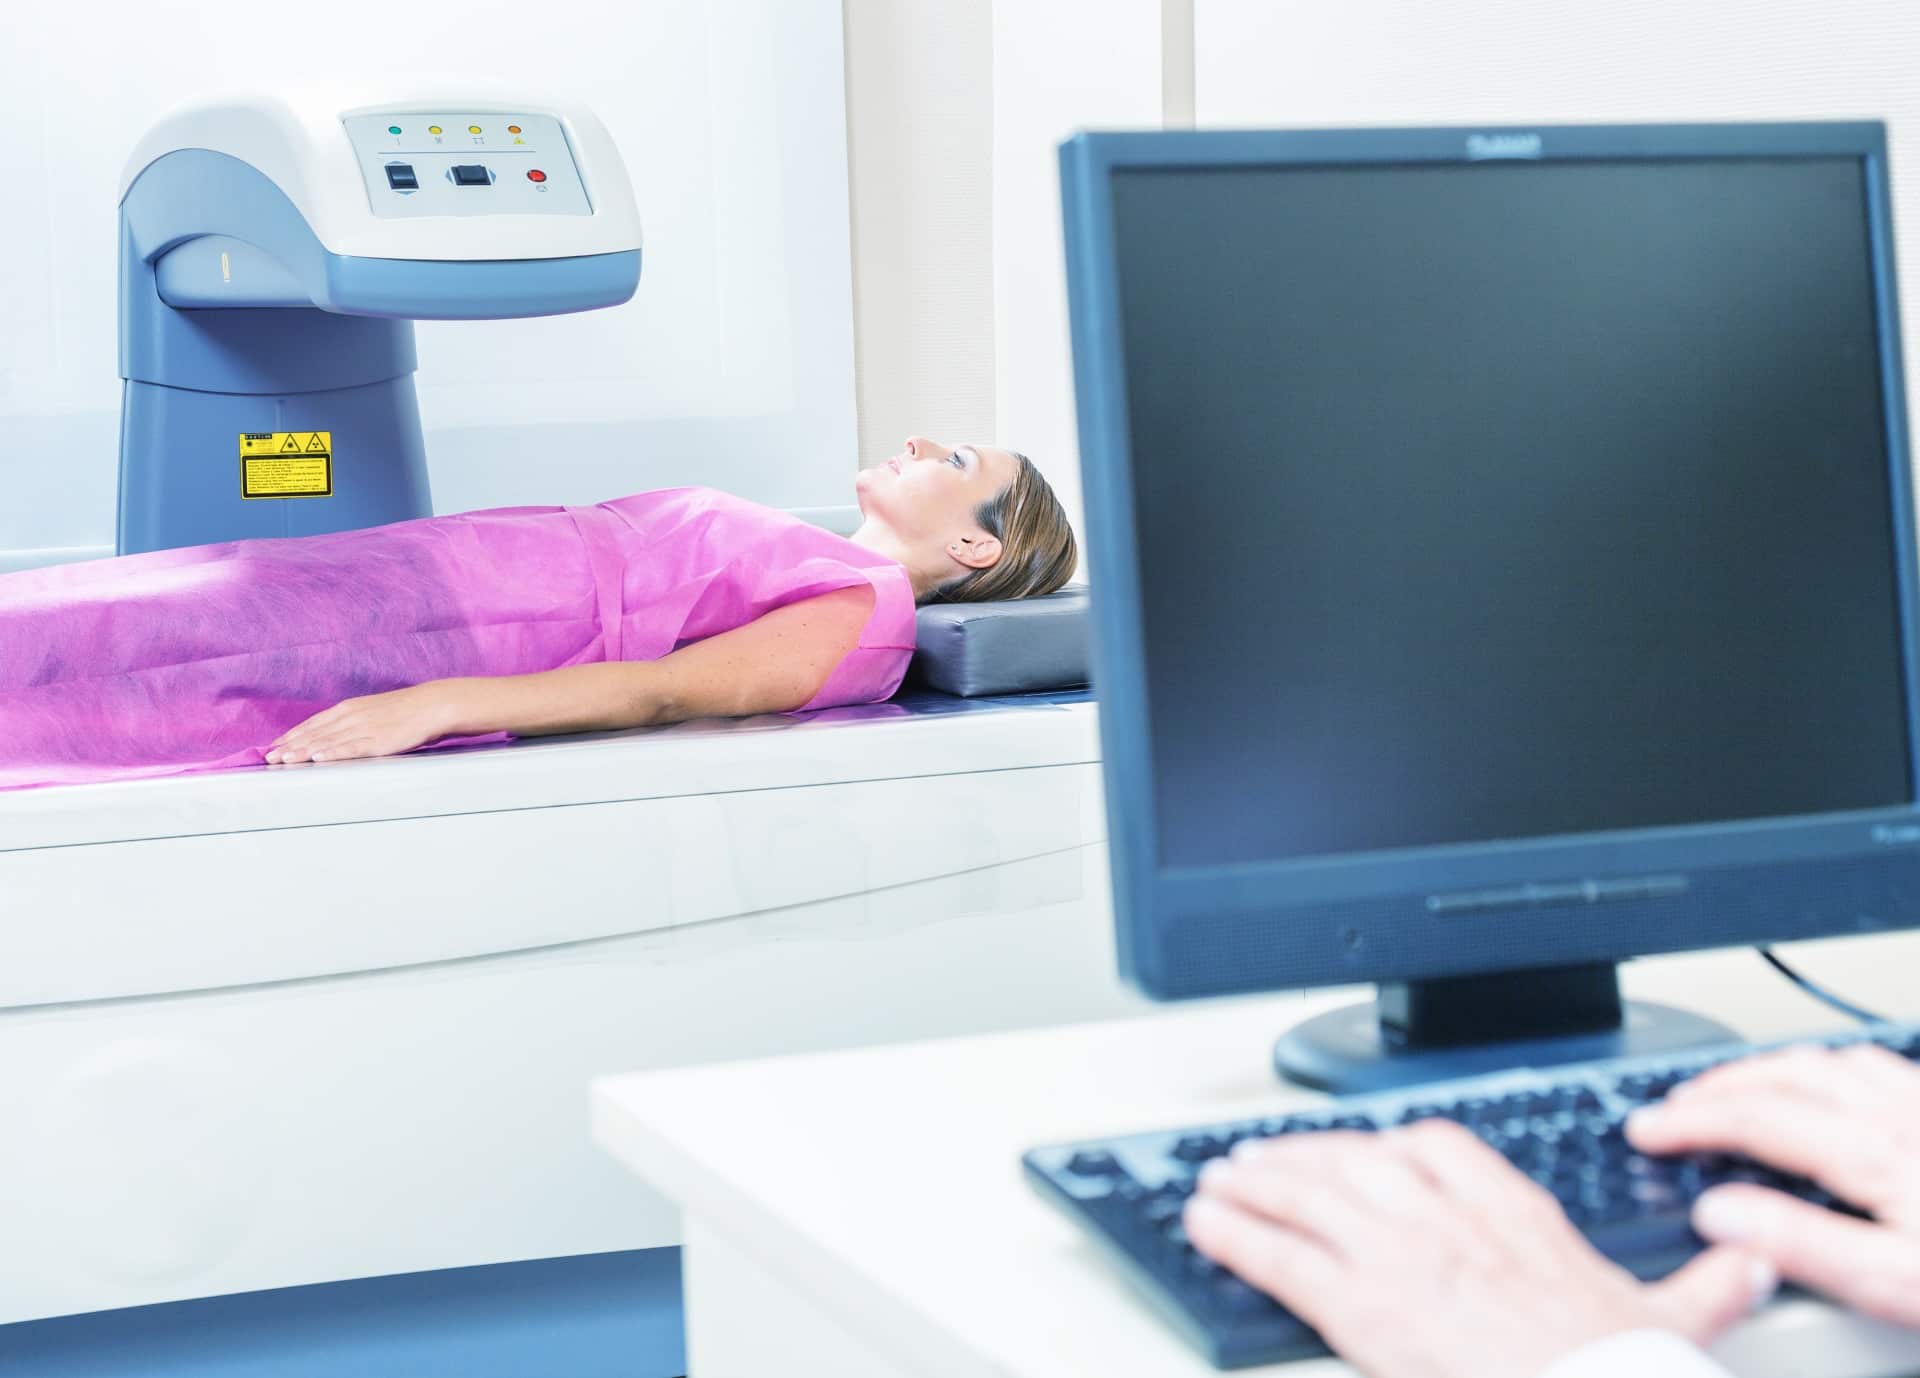 Ostéodensitométrie | Centre de radiologie IRM et scanner | Imagerie médicale HPA | Antony